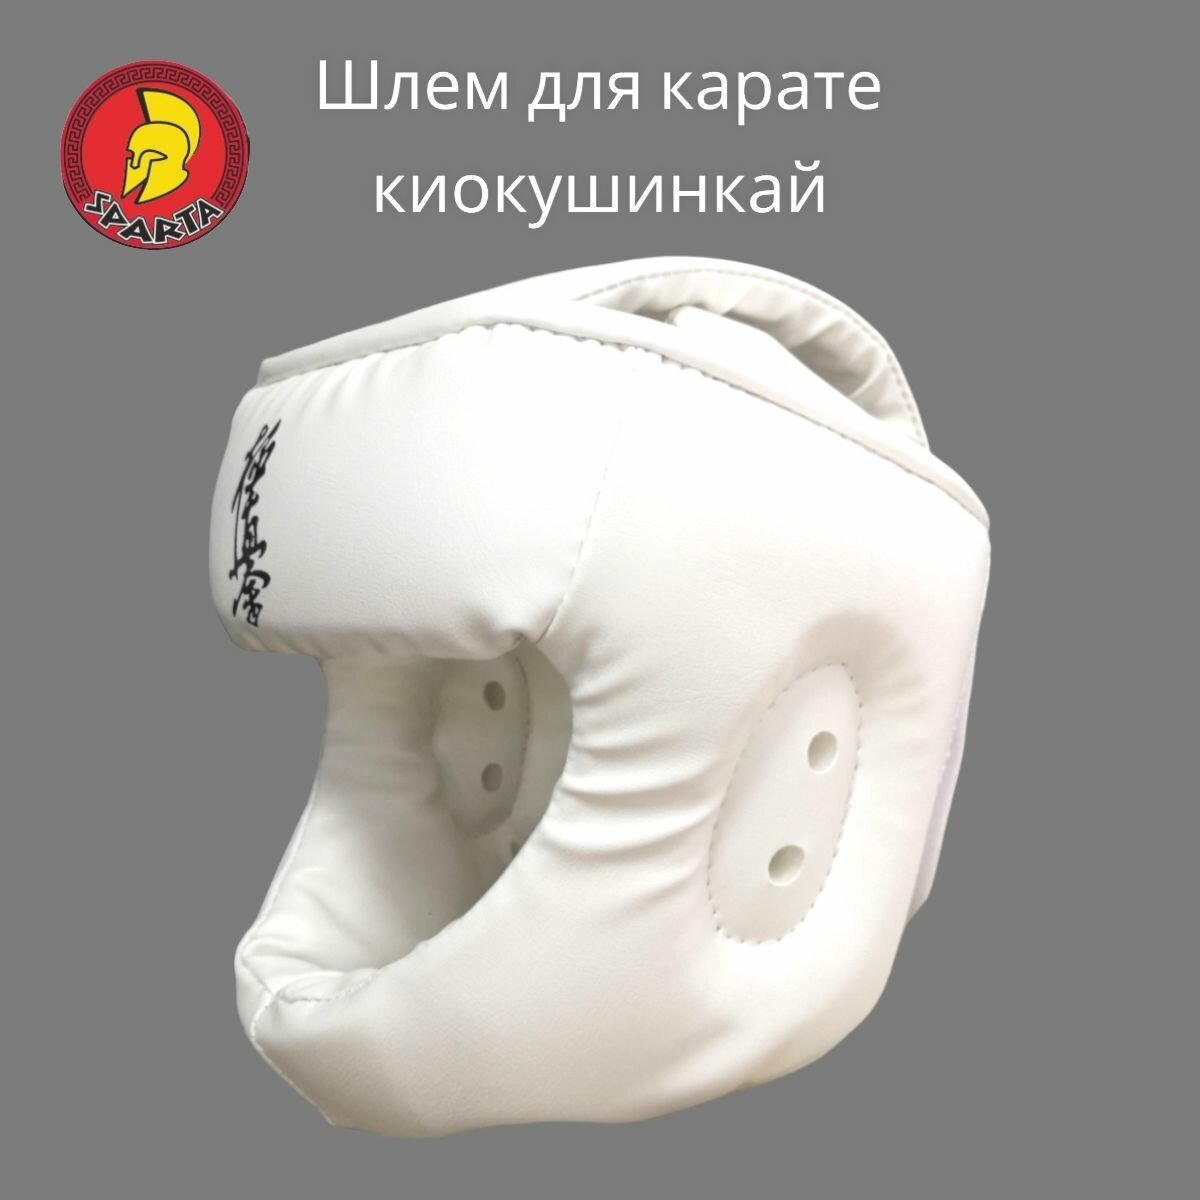 Шлем для каратэ Киокушинкай "Боец" р. S